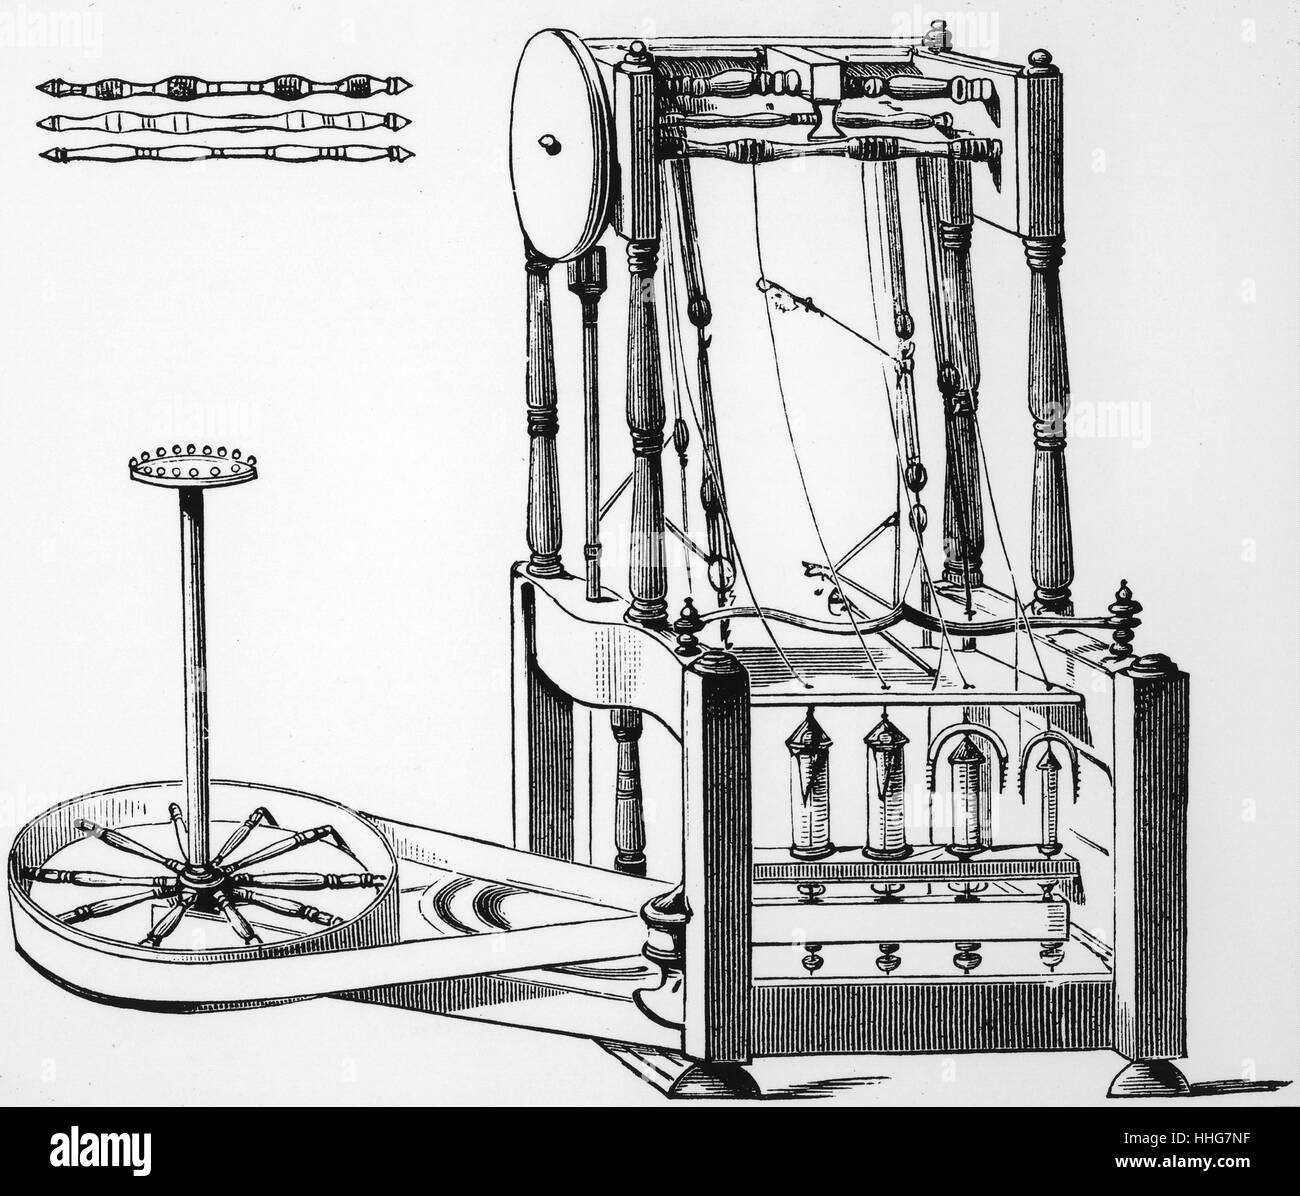 Diagramm der Arkwright wasser Rahmen; 1878. Die Wasserrahmenrichtlinie ist der Name einer Wasser gegeben - Spinnerei Rahmen, war eine einfache Möglichkeit, Baumwolle Thread zu erstellen. Die Maschine zum ersten Mal im Jahr 1768 verwendet wurde. Es war in der Lage 128 Threads gleichzeitig zu drehen; das war die einfachste und schnellste Methode als je zuvor. Es wurde von Richard Arkwright entwickelt; die patentierte Technologie im Jahr 1767 Stockfoto